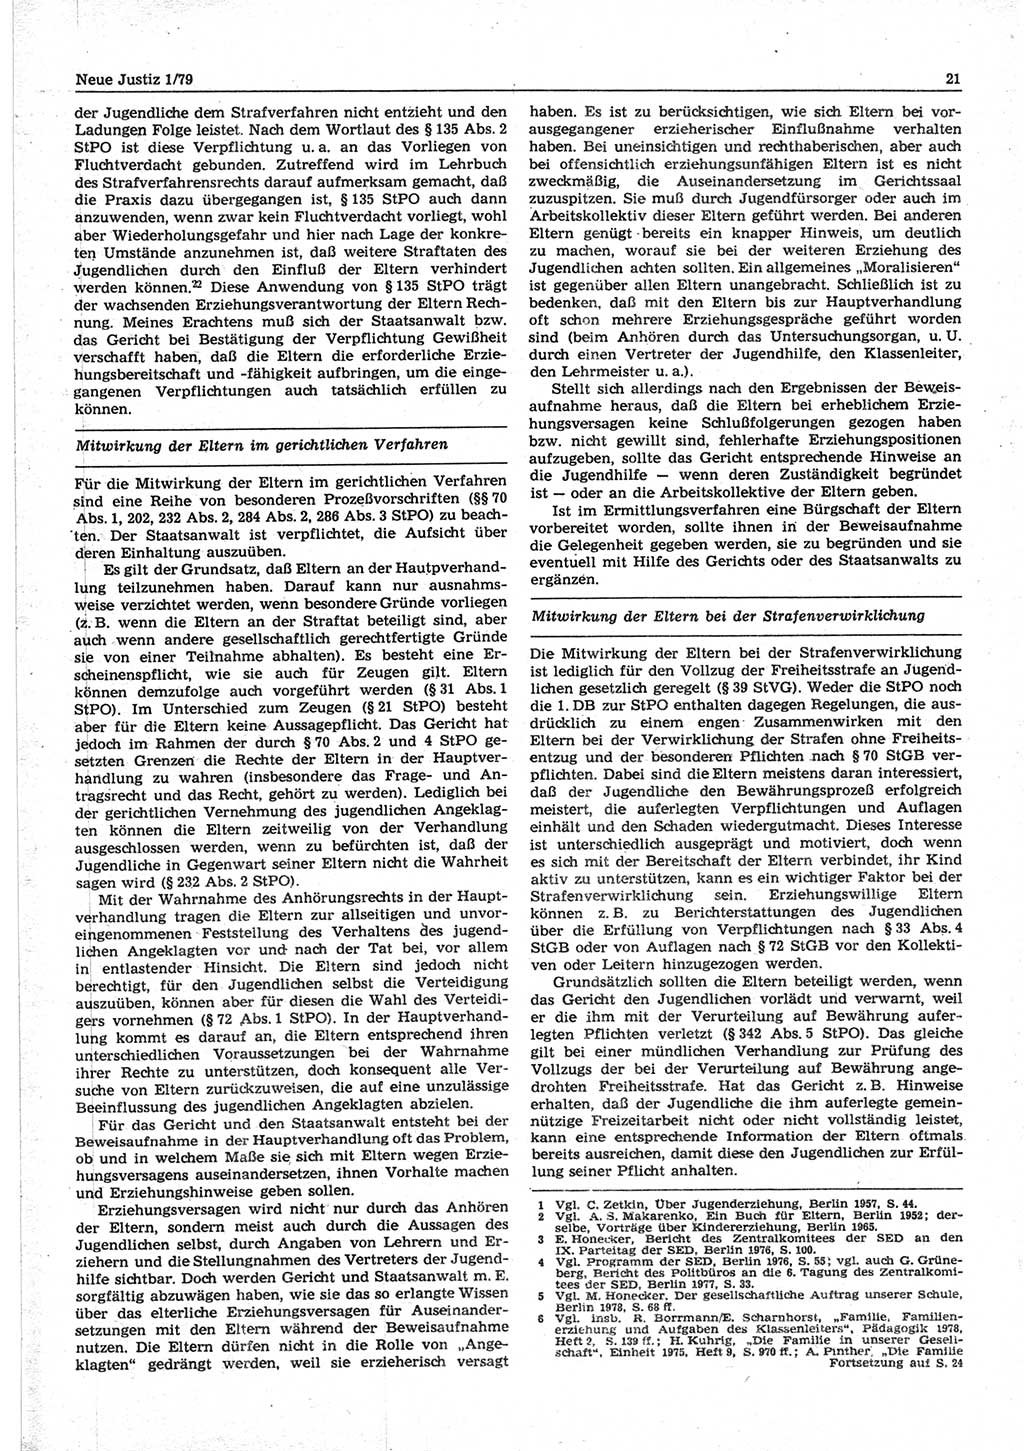 Neue Justiz (NJ), Zeitschrift für sozialistisches Recht und Gesetzlichkeit [Deutsche Demokratische Republik (DDR)], 33. Jahrgang 1979, Seite 21 (NJ DDR 1979, S. 21)